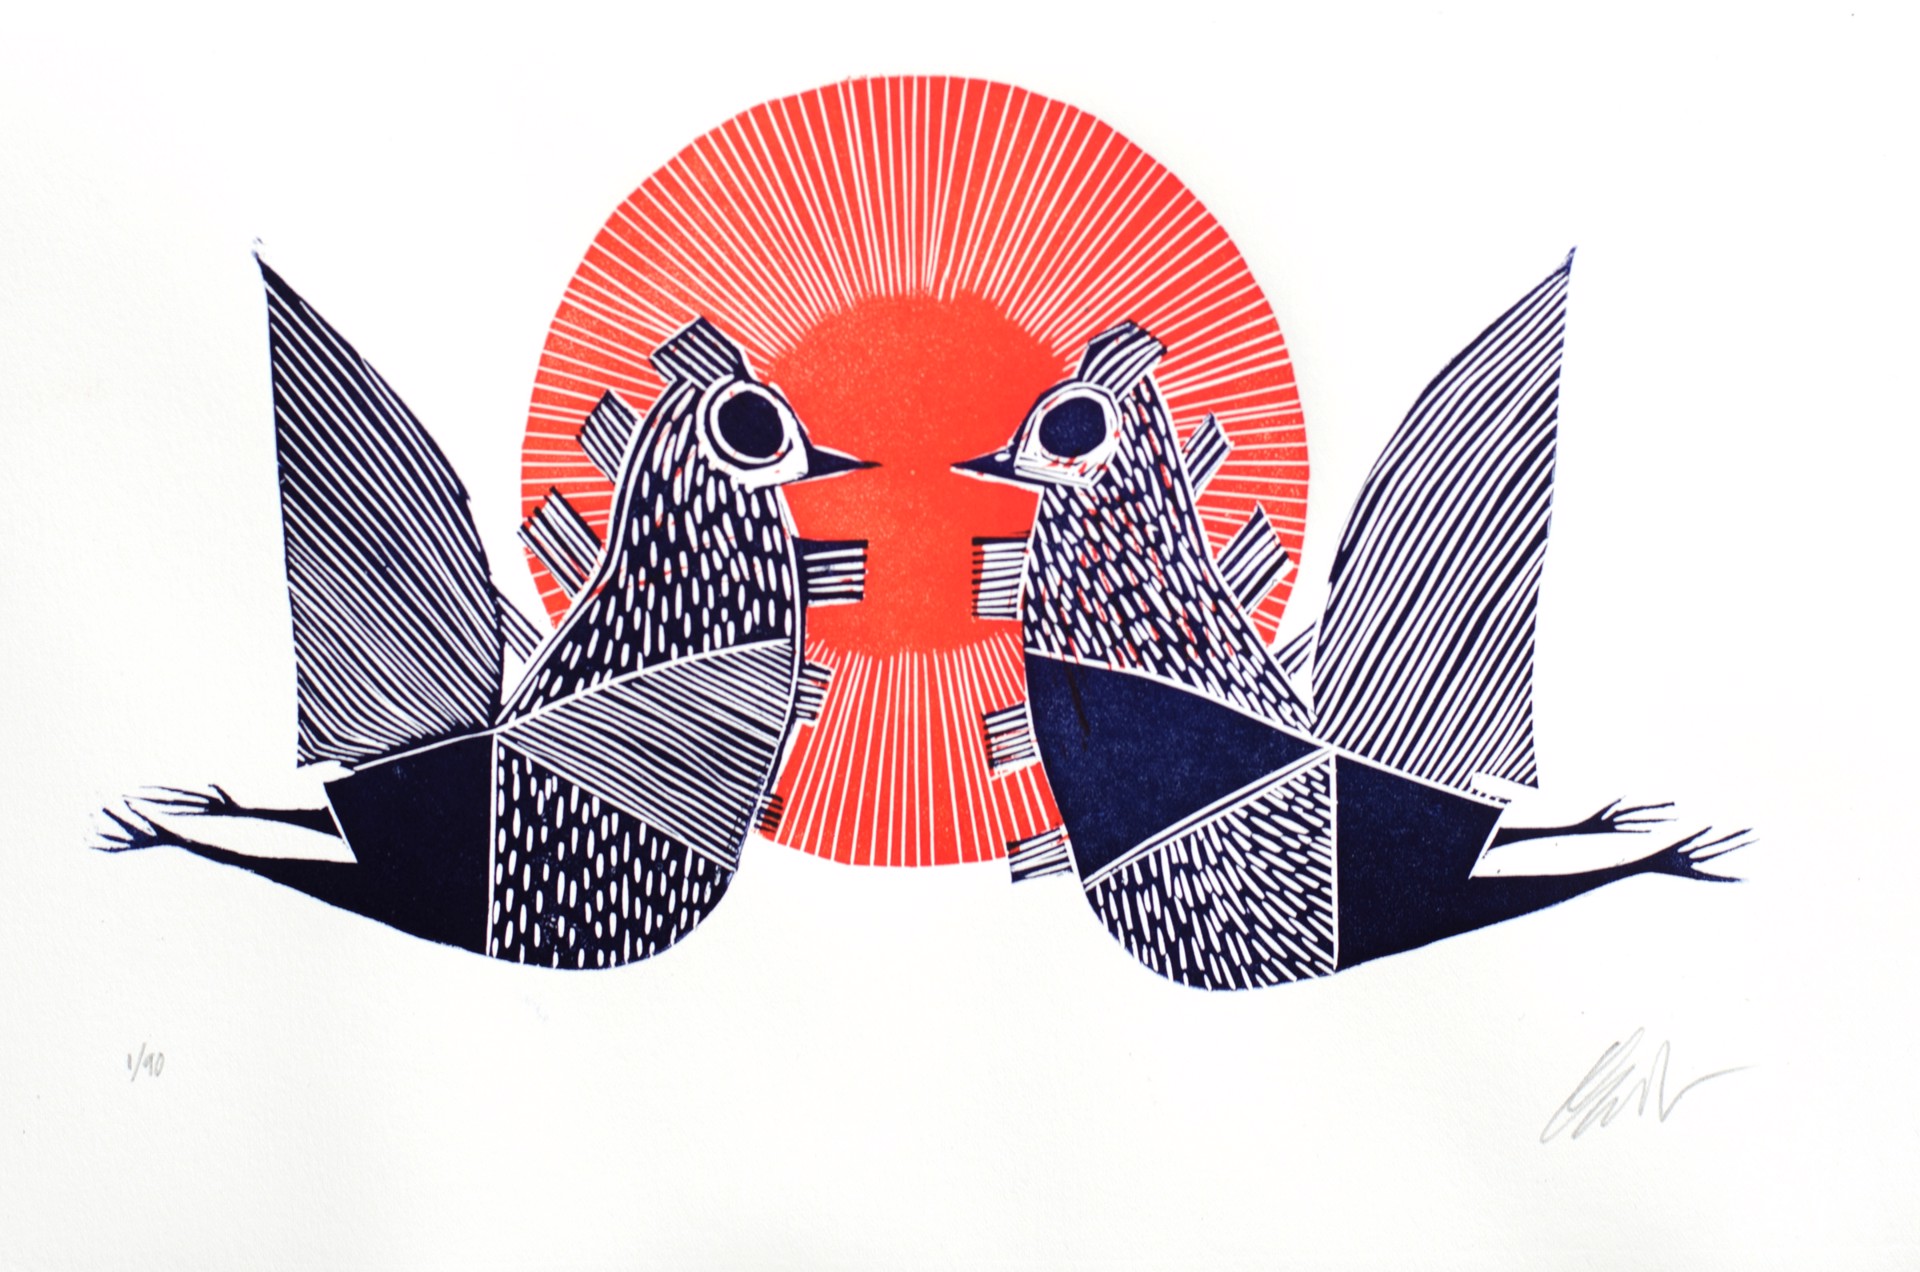 Pájaros del Amor by Paul Rodriguez